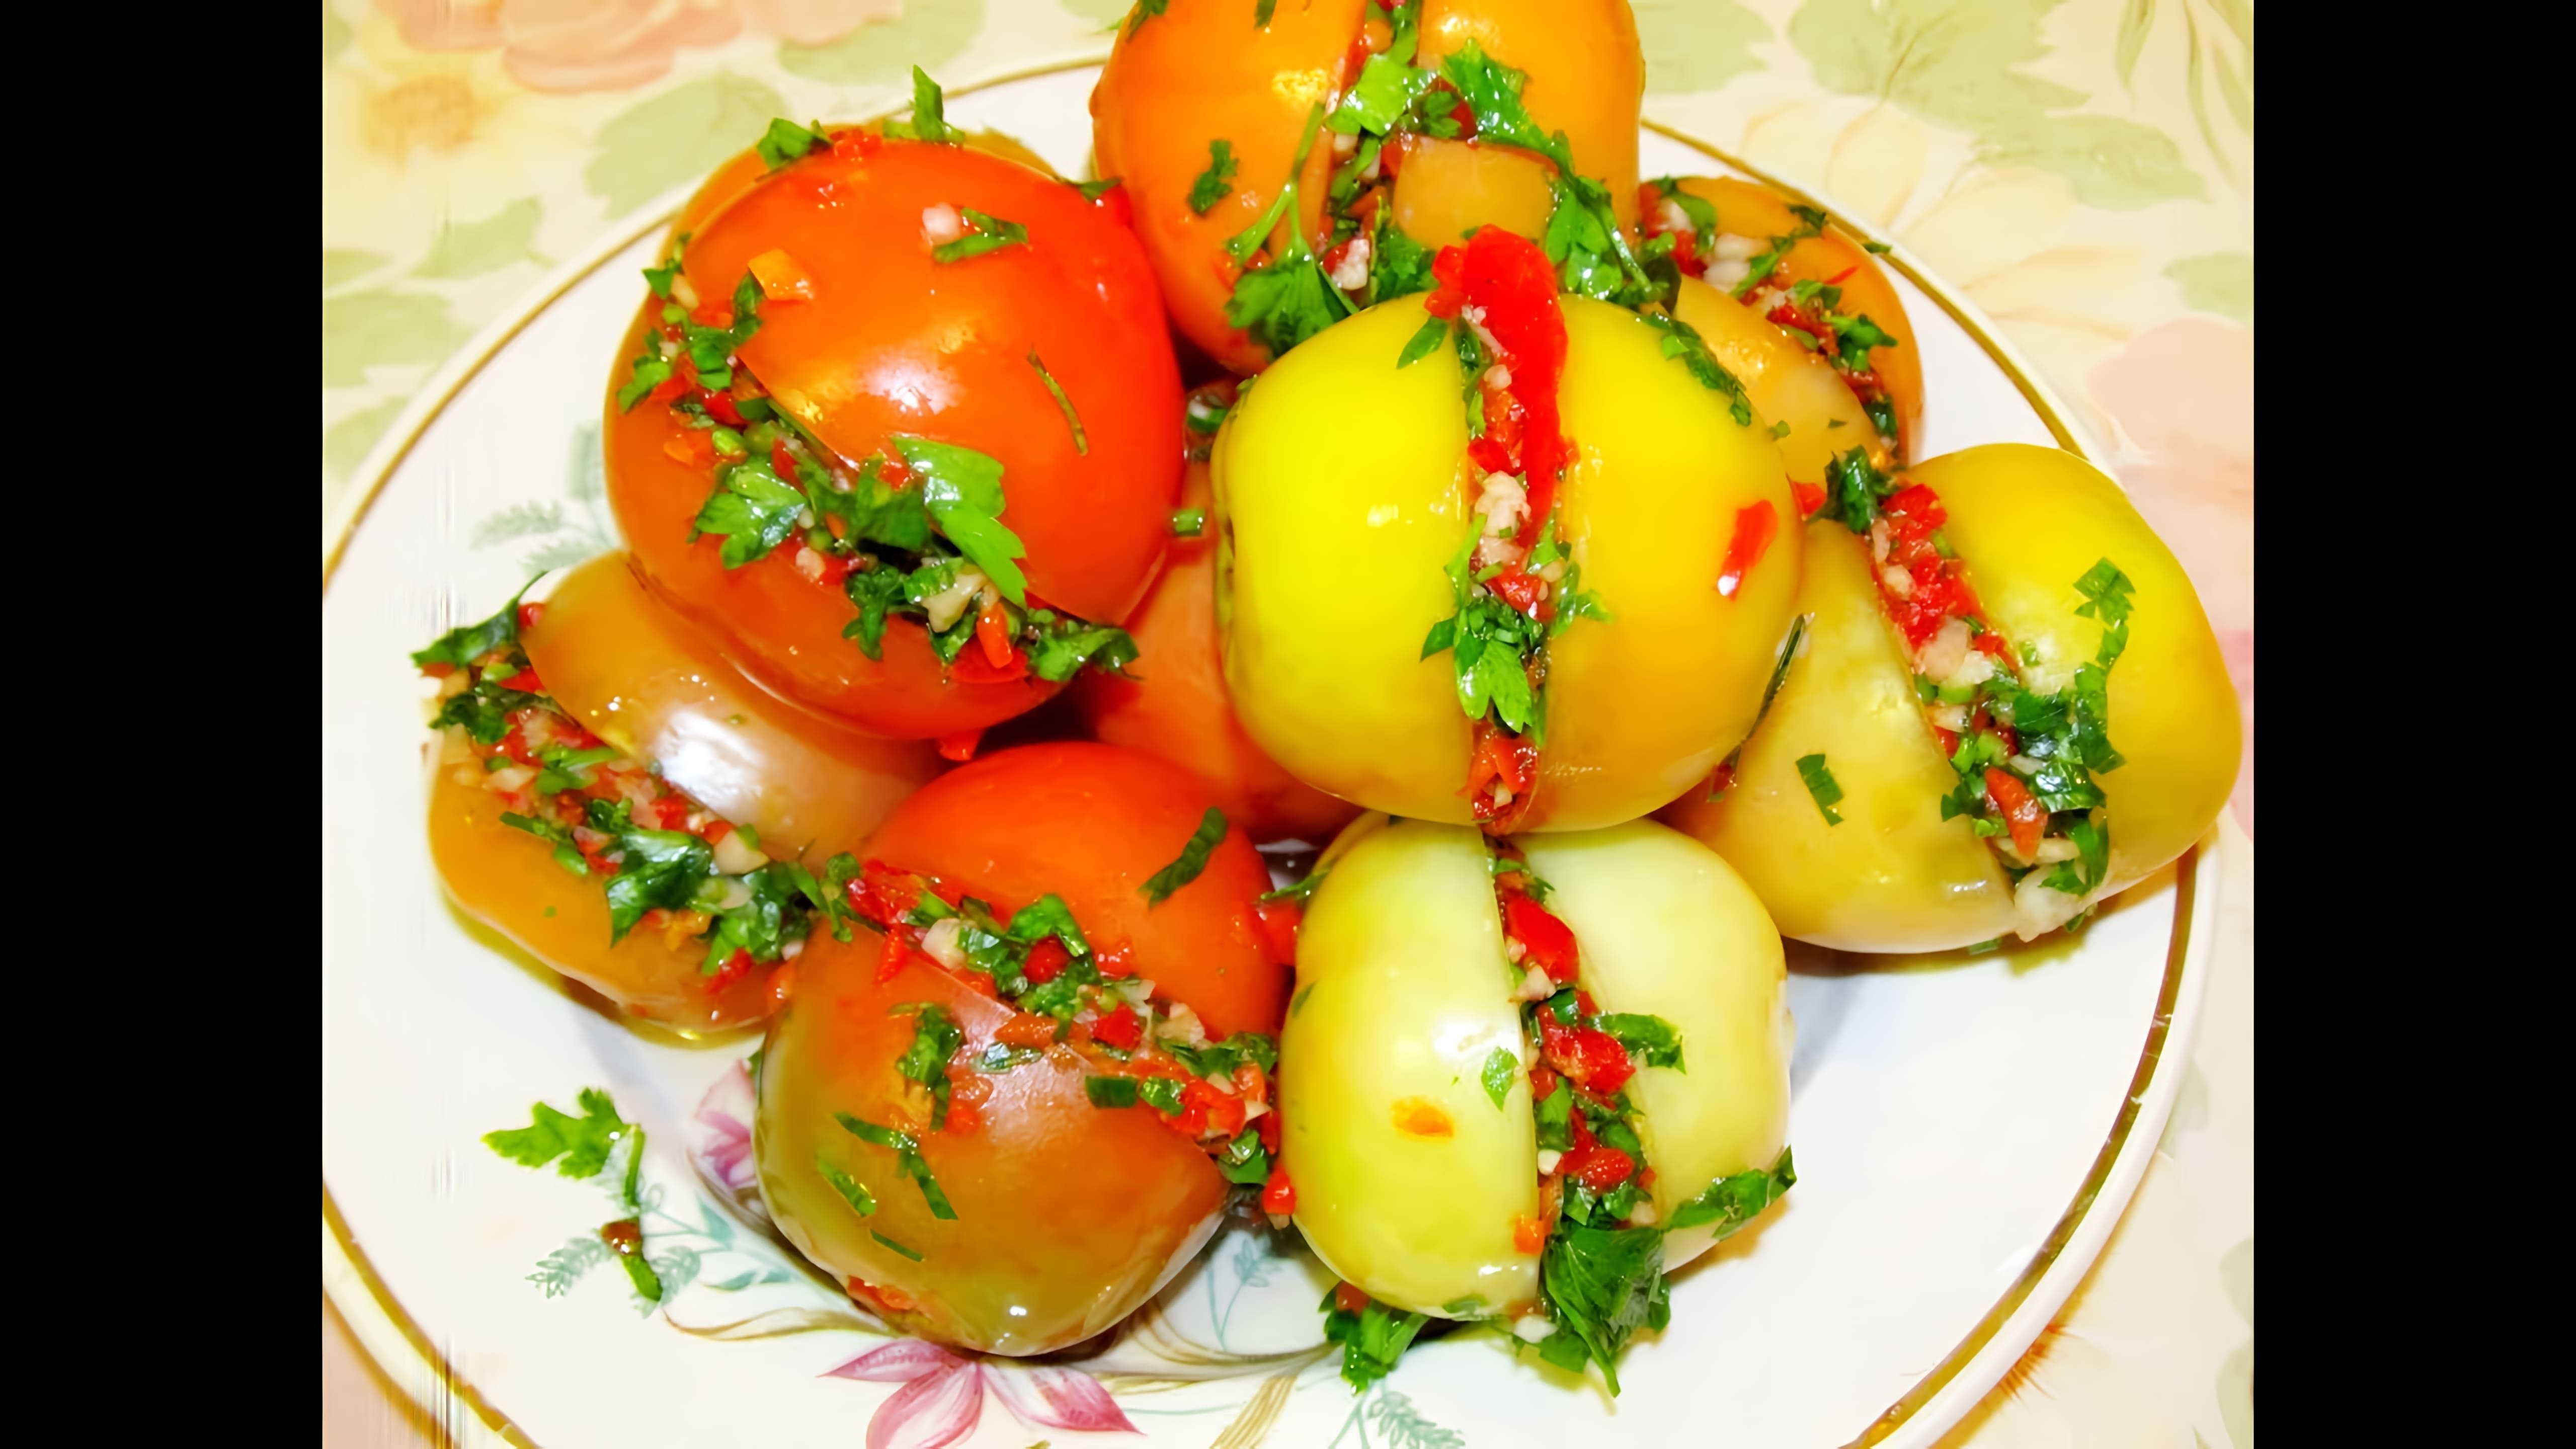 В данном видео демонстрируется процесс приготовления квашеных помидоров с ароматной и пикантной начинкой